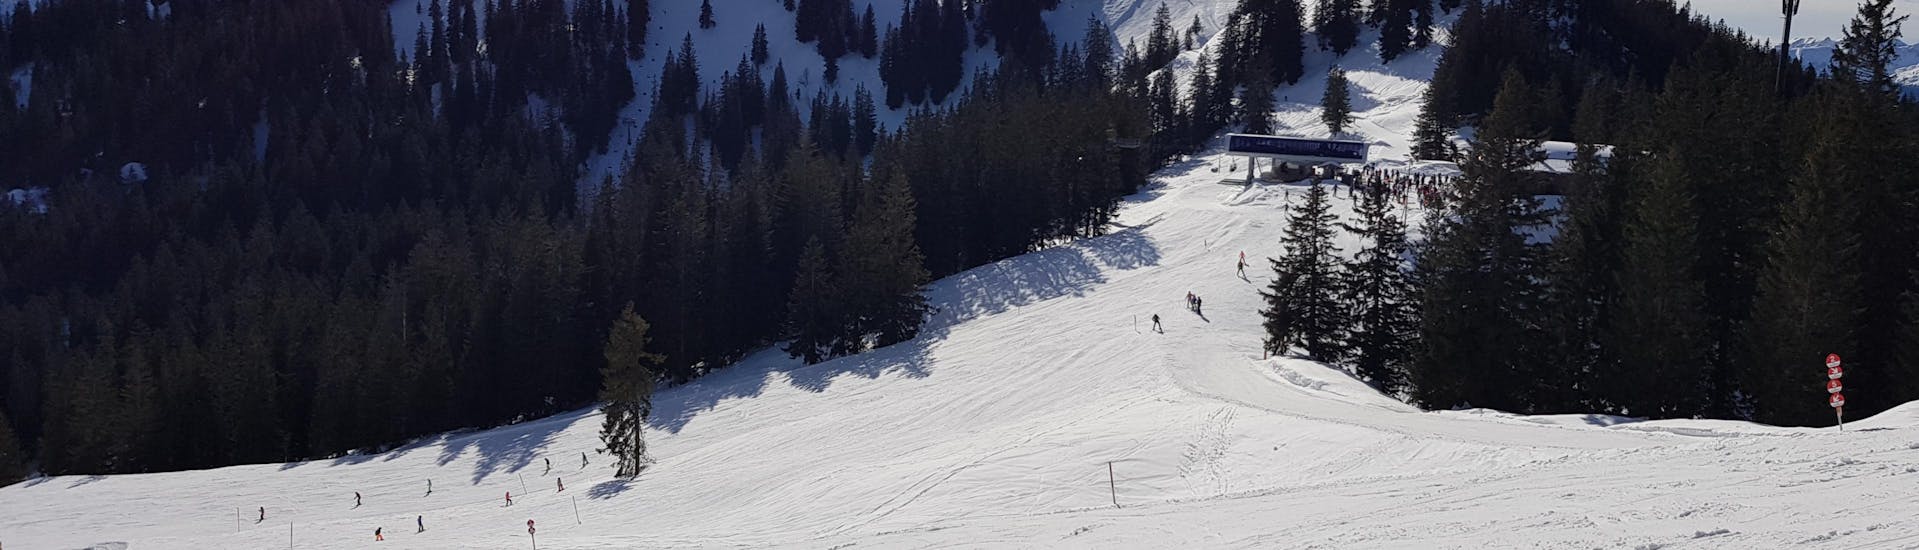 Ausblick auf die sonnige Berglandschaft beim Skifahren lernen mit den Skischulen in Spitzingsee-Tegernsee.